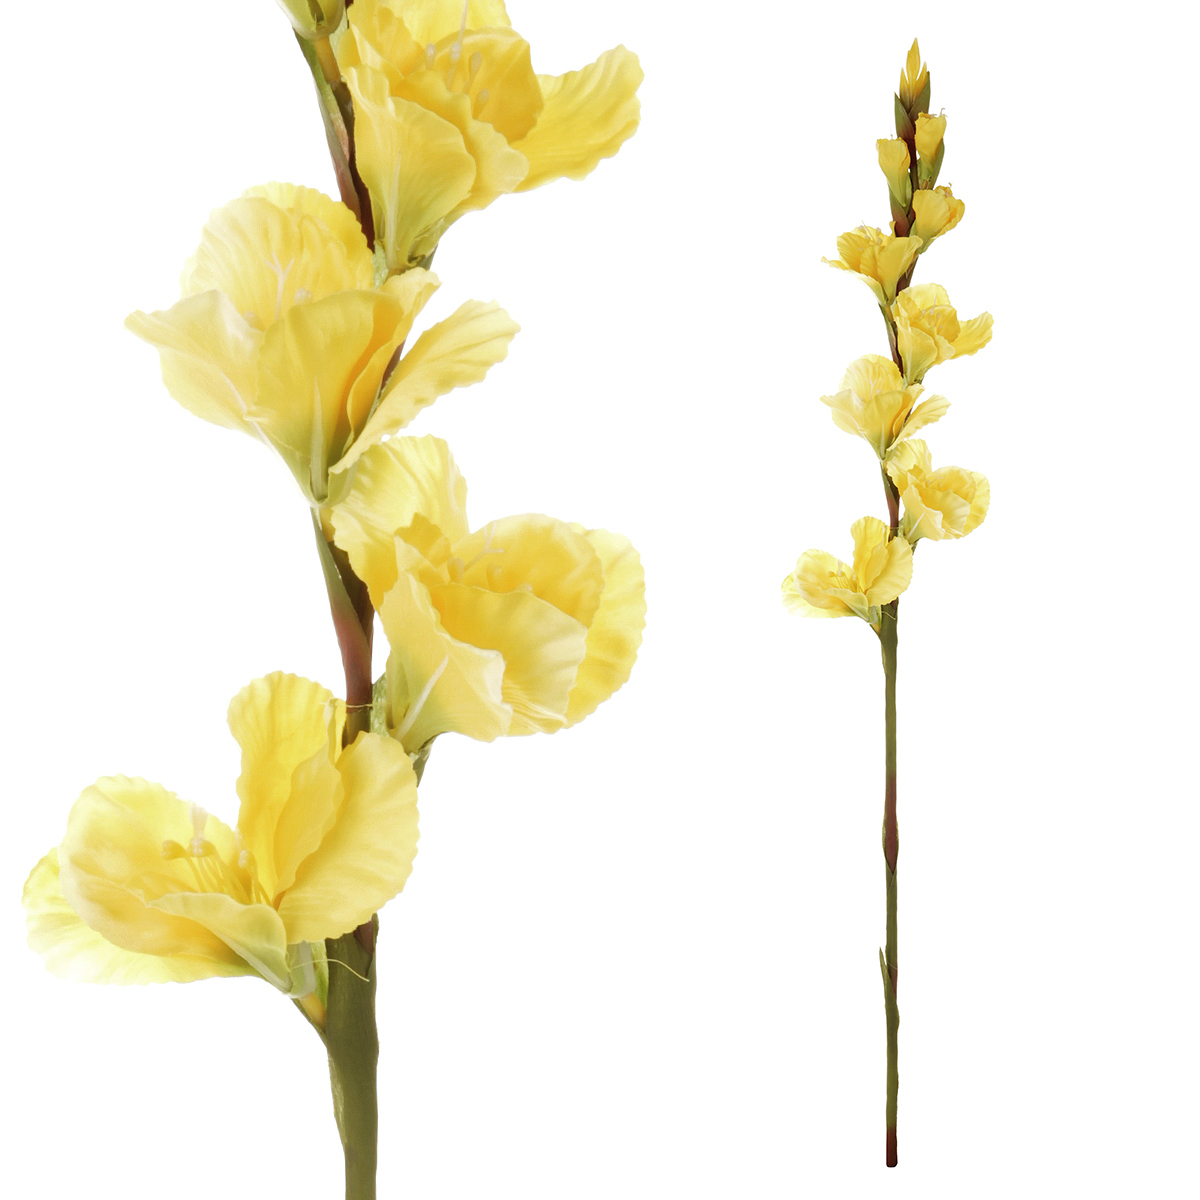 Gladiola - umělá květina, barva žlutá.